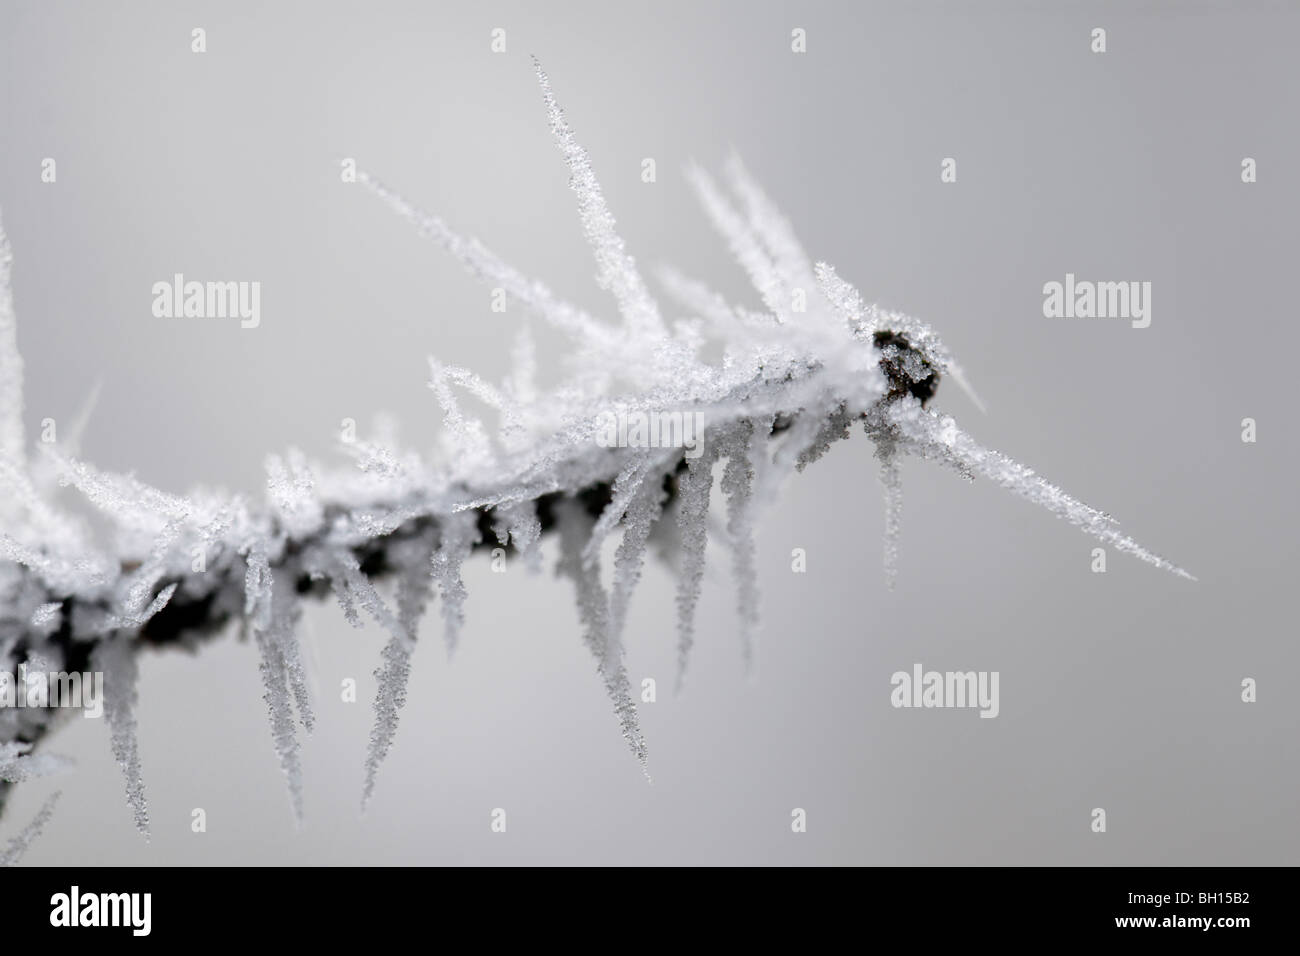 Vicino la scena invernale di abbastanza pungenti trasformata per forte gradiente gelo su un ramo congelata pianta che mostra dei cristalli di ghiaccio Foto Stock